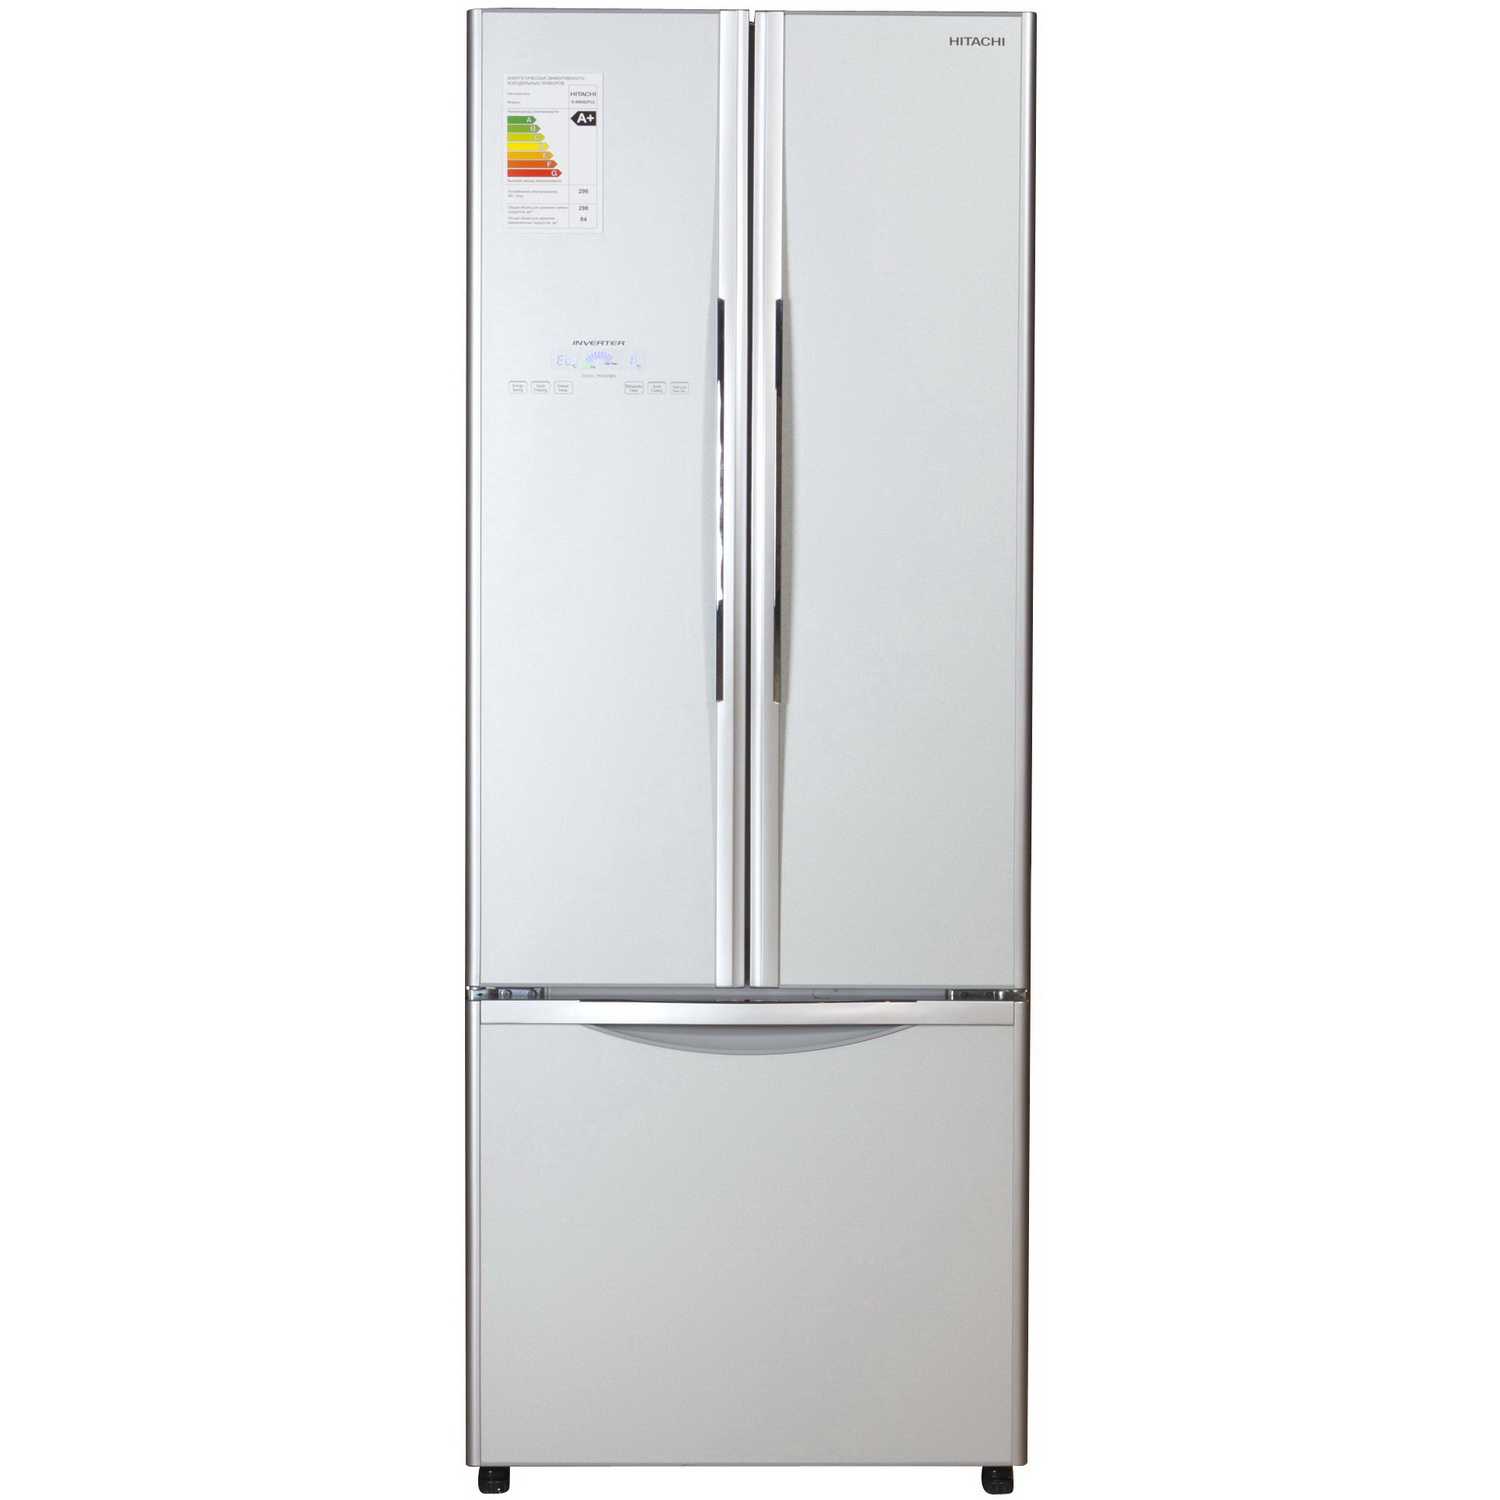 Особенности выбора лучших моделей холодильников side-by-side hitachi